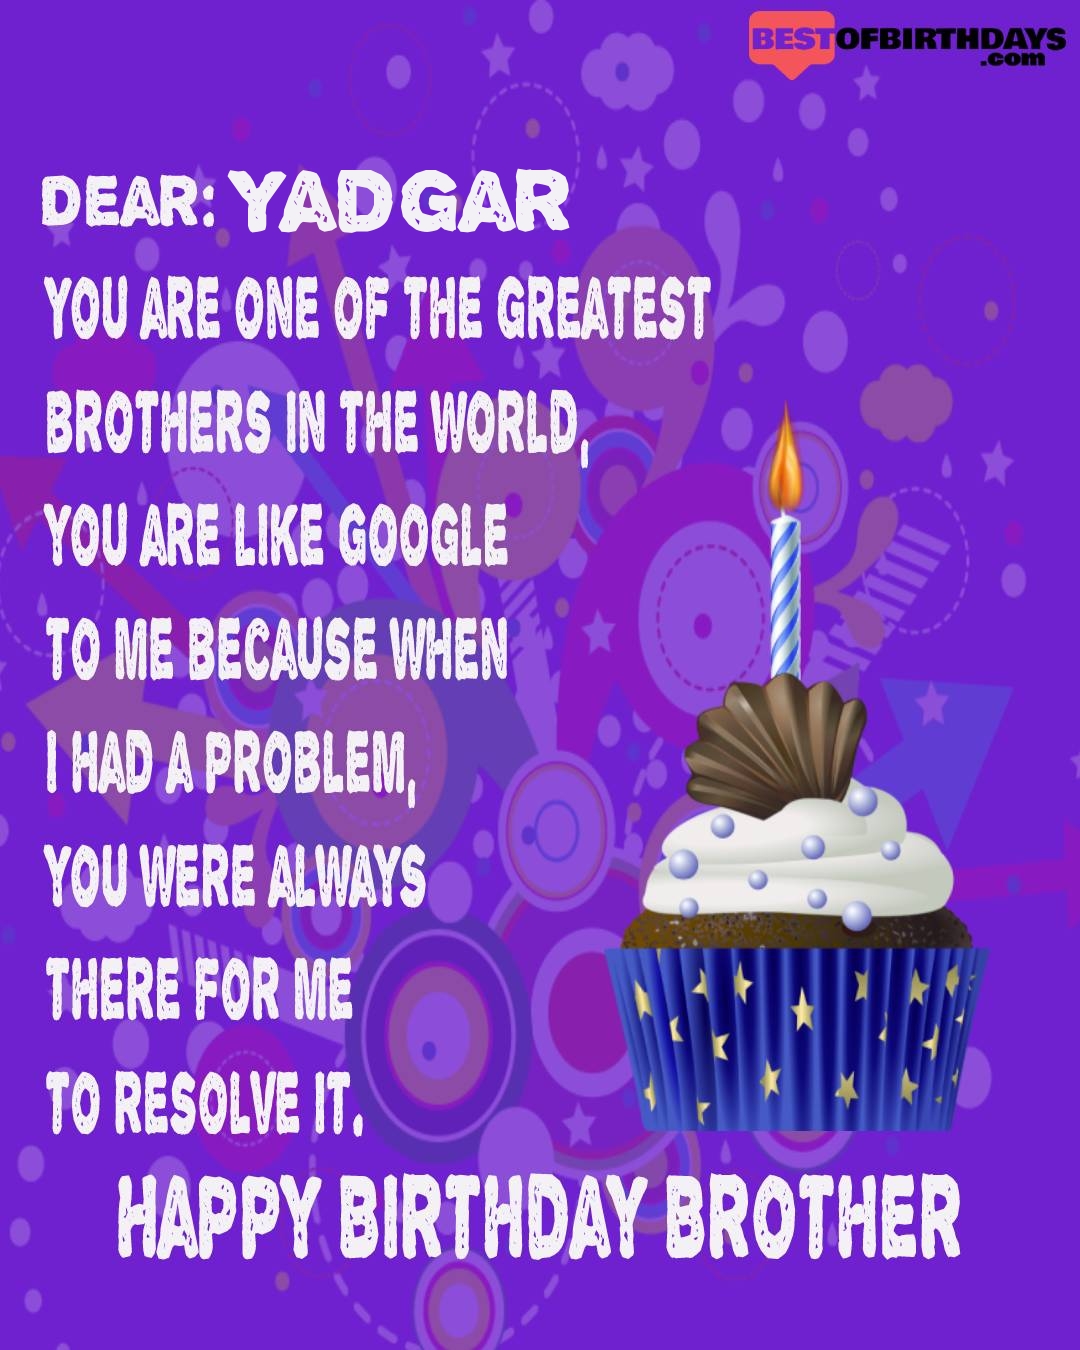 Happy birthday yadgar bhai brother bro